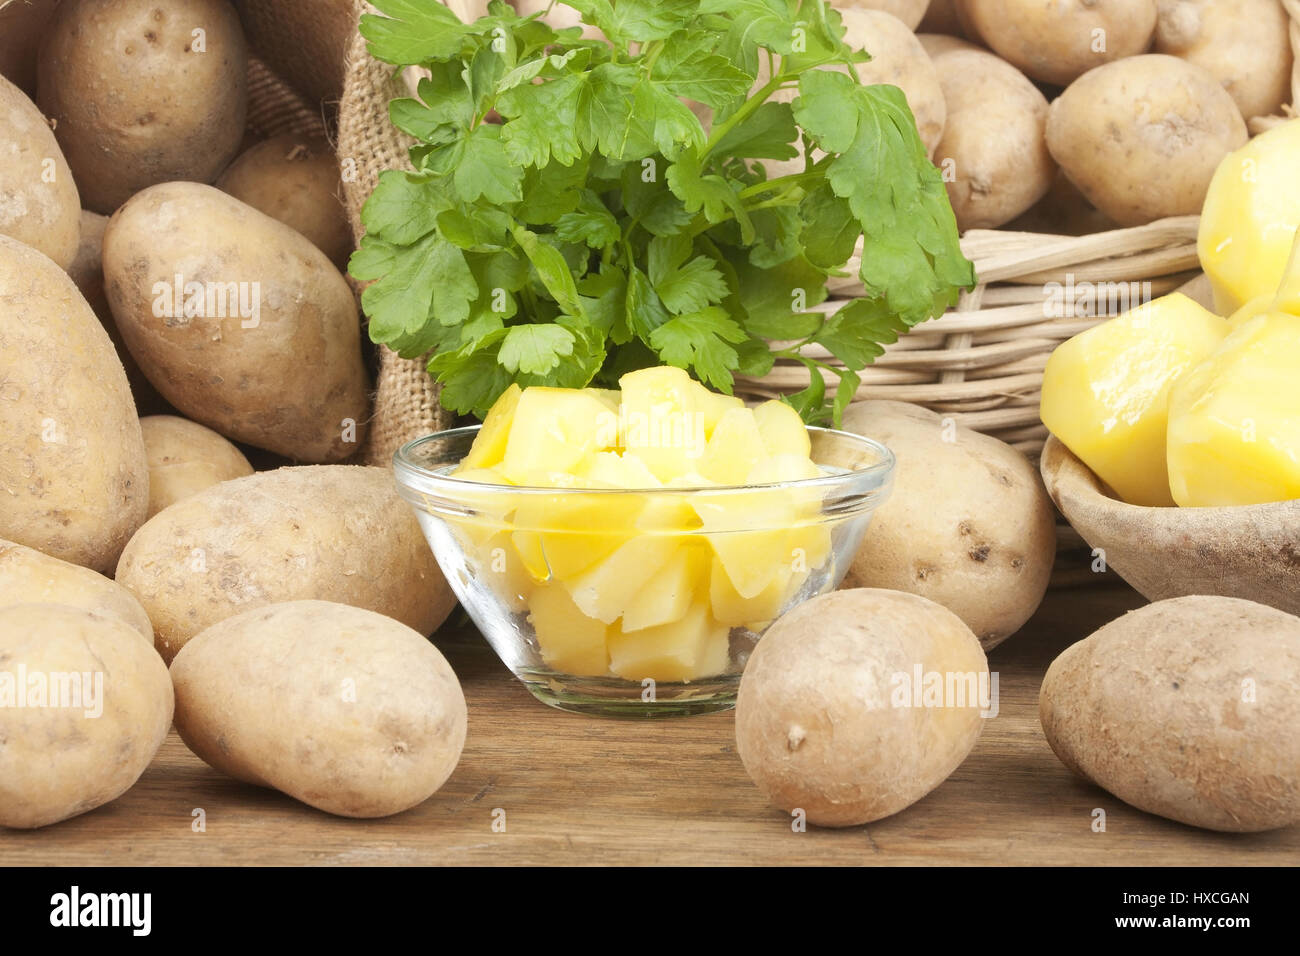 Potatoes with parsley, Potatoes with parsley |, Kartoffeln mit Petersilie |Potatoes with parsley| Stock Photo